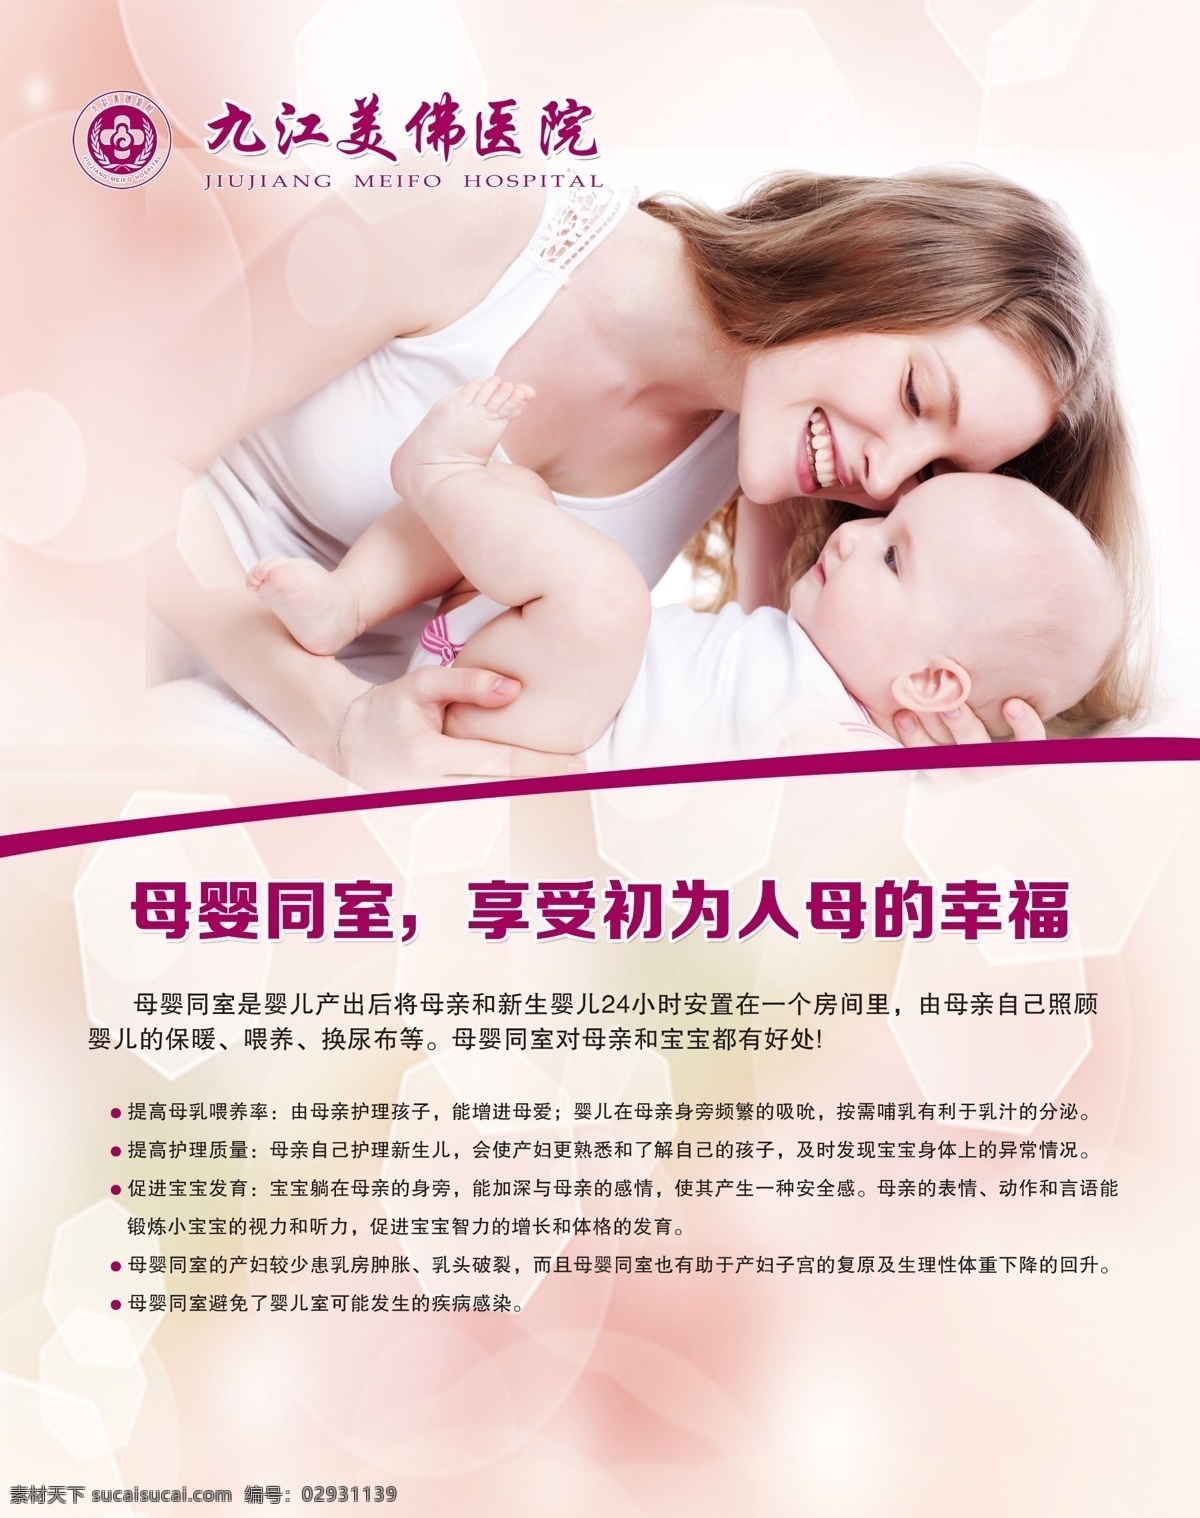 医院海报 母婴同室 婴儿 妇产科 产科 妇科 医院 妈妈 宝宝 展板模板